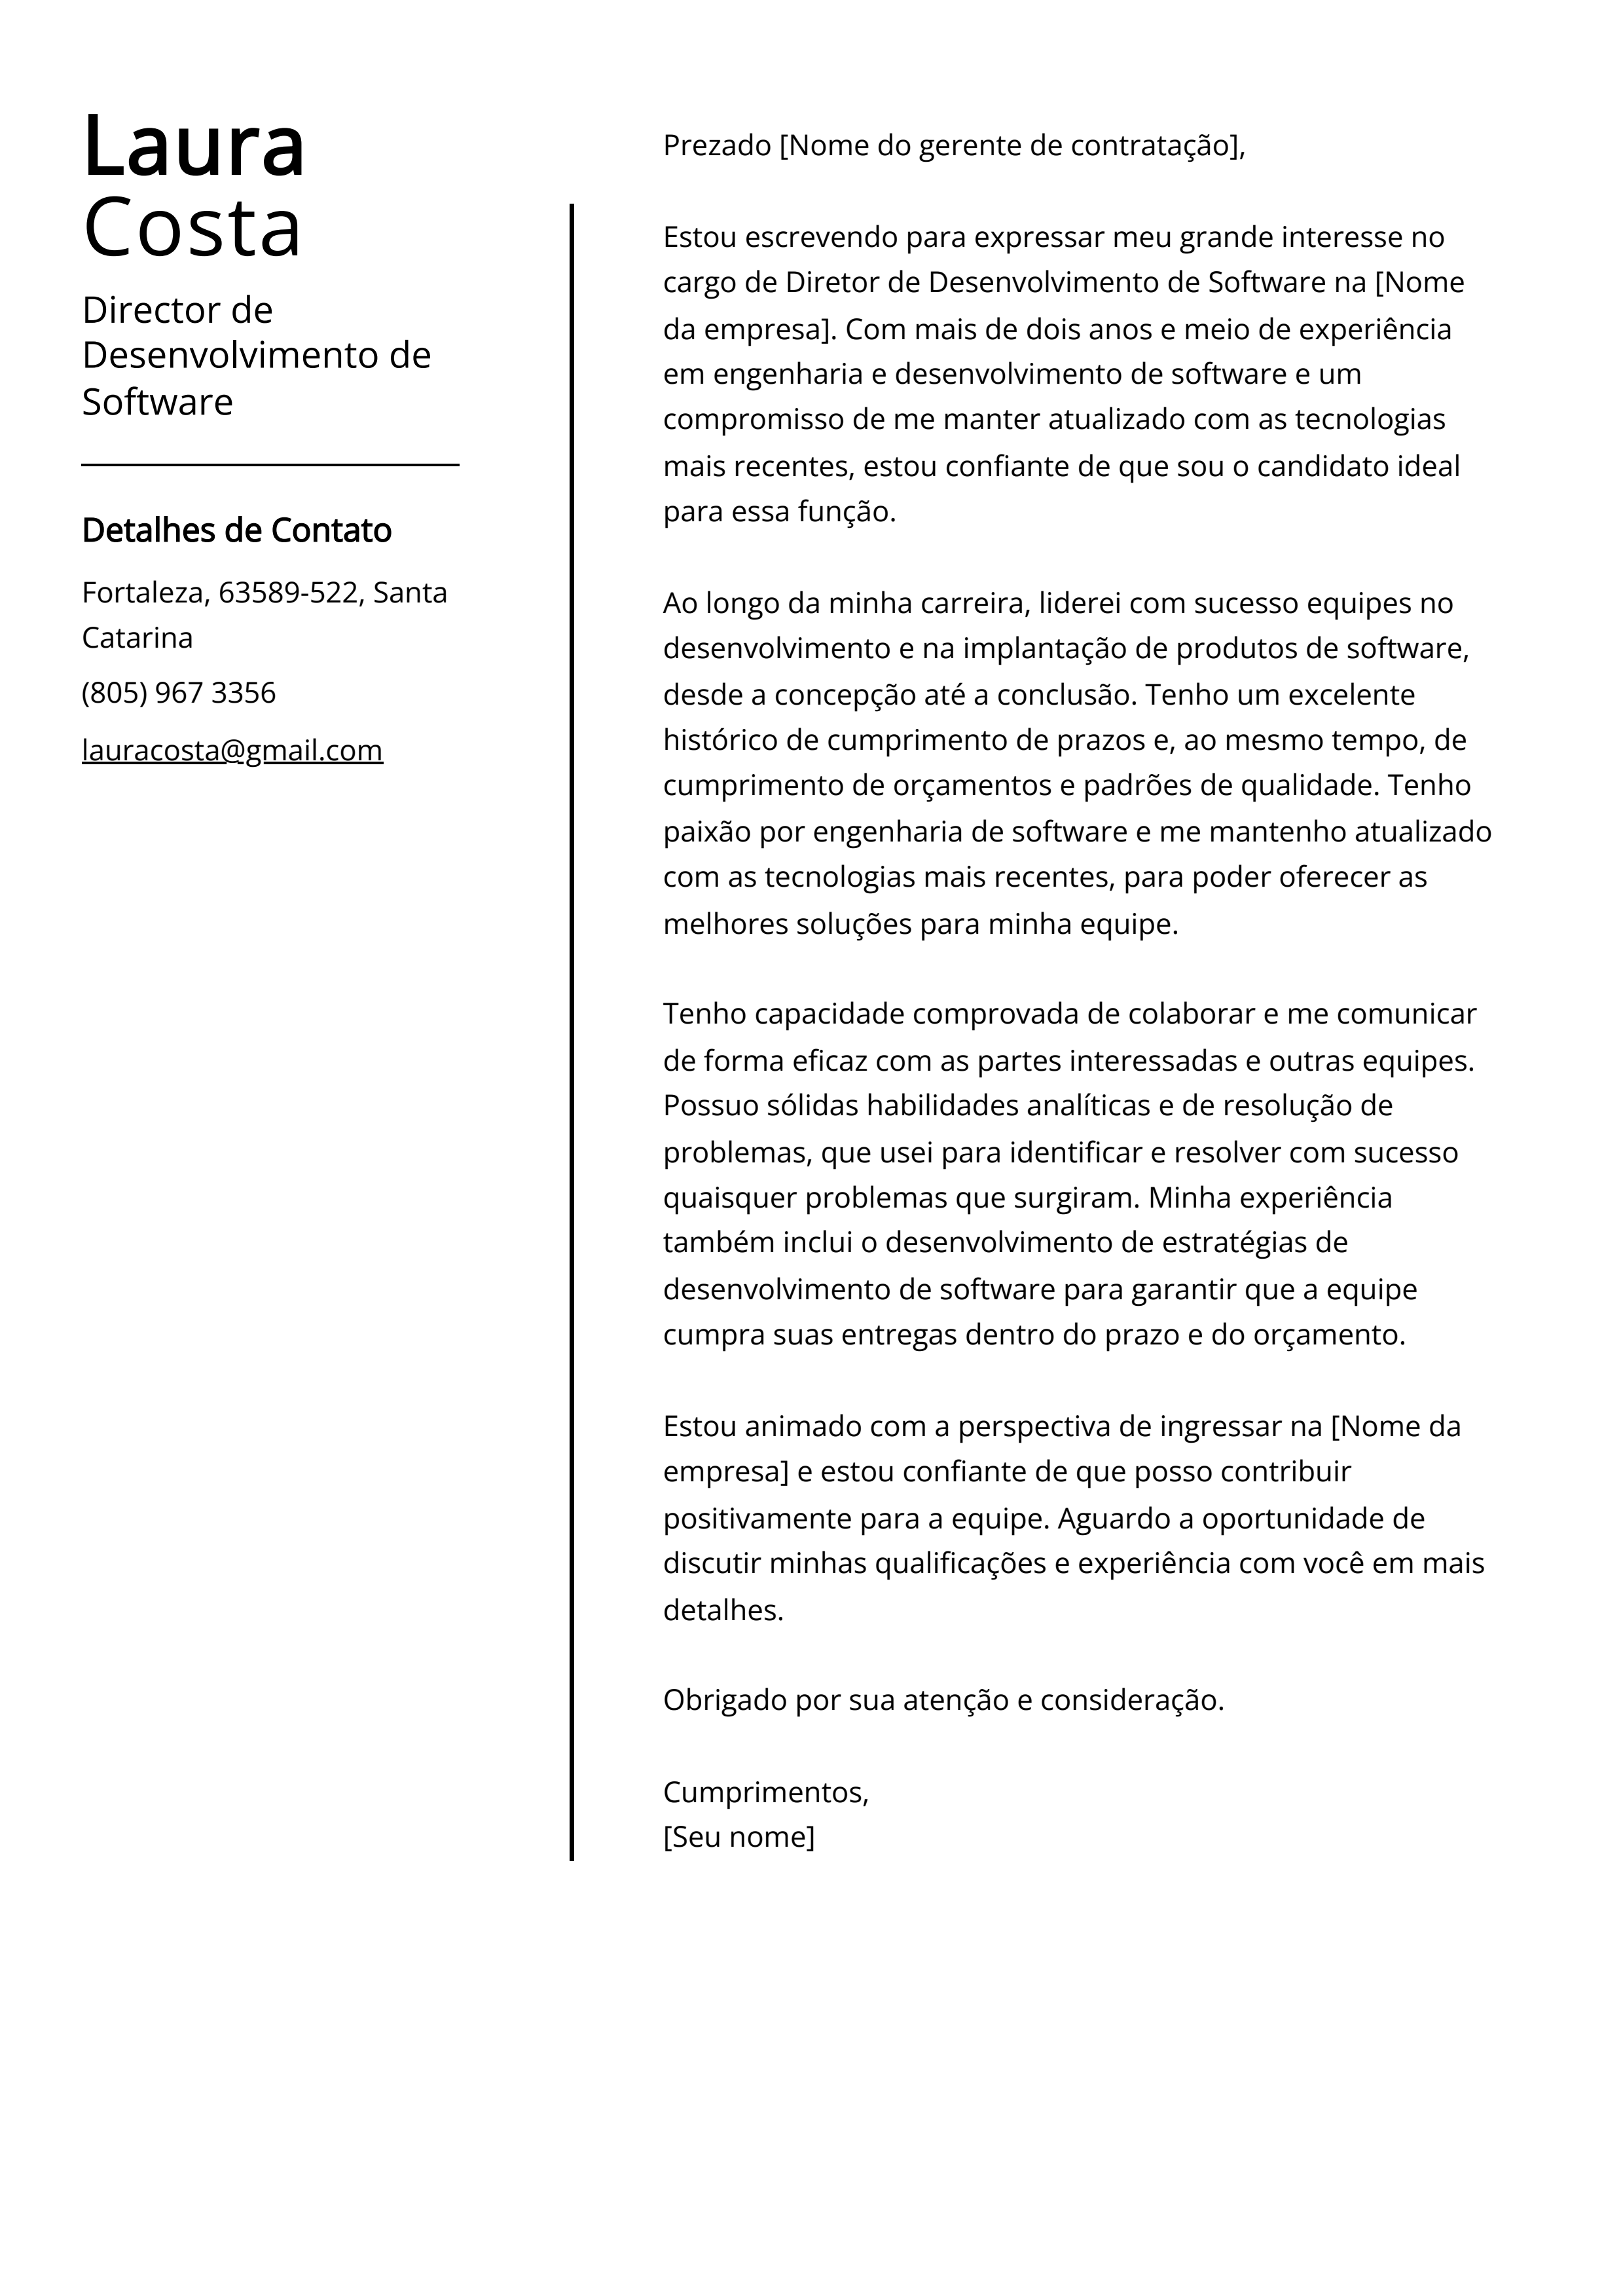 Exemplo de carta de apresentação do Diretor de Desenvolvimento de Software